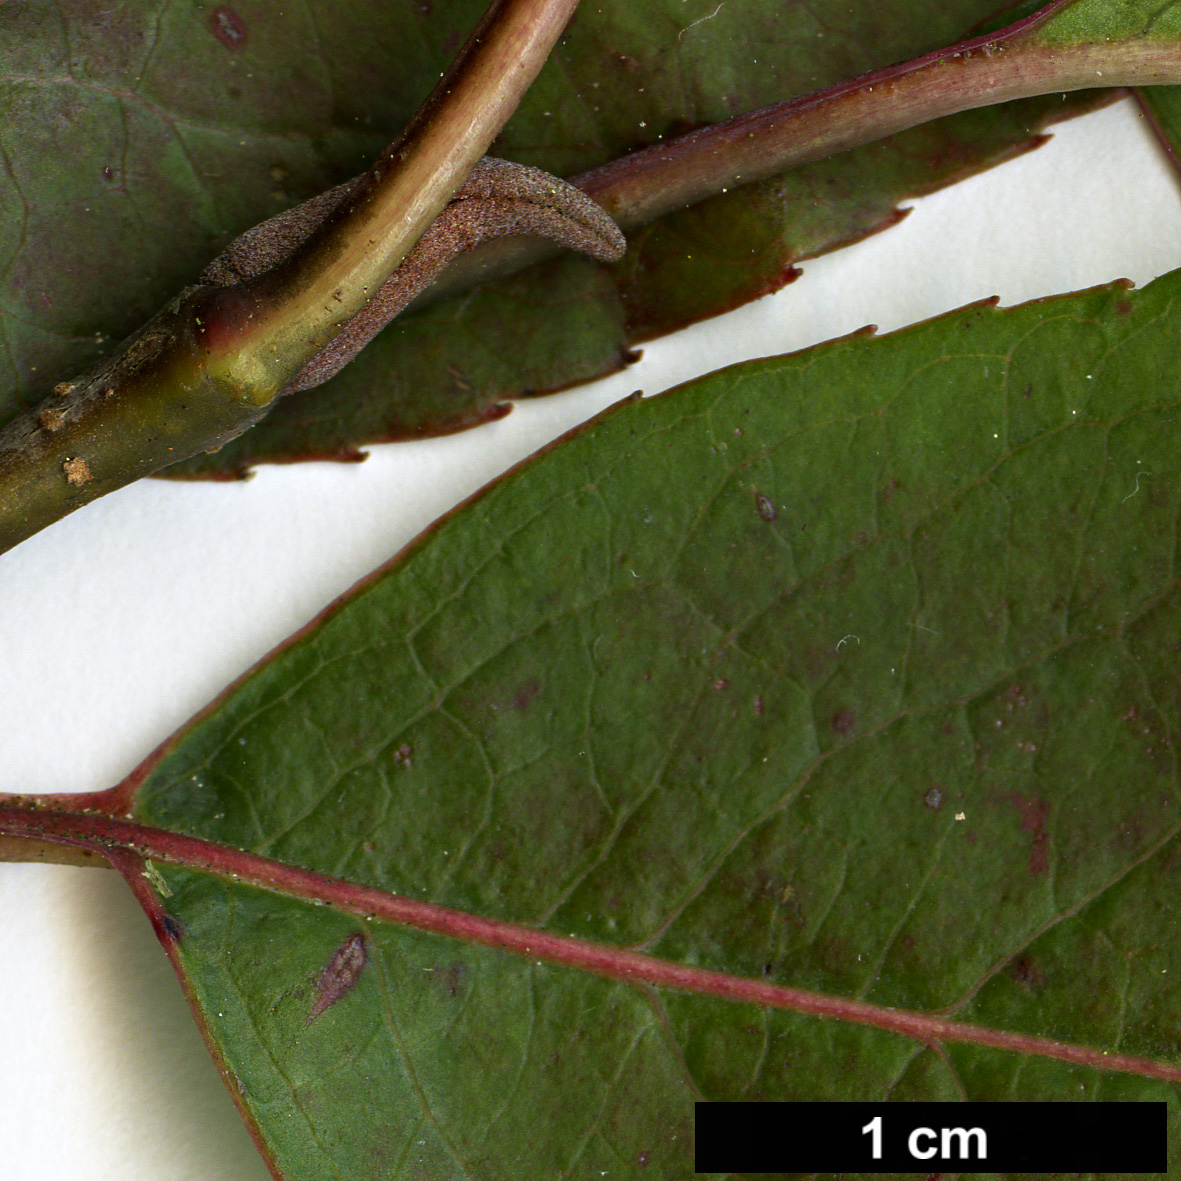 High resolution image: Family: Adoxaceae - Genus: Viburnum - Taxon: prunifolium